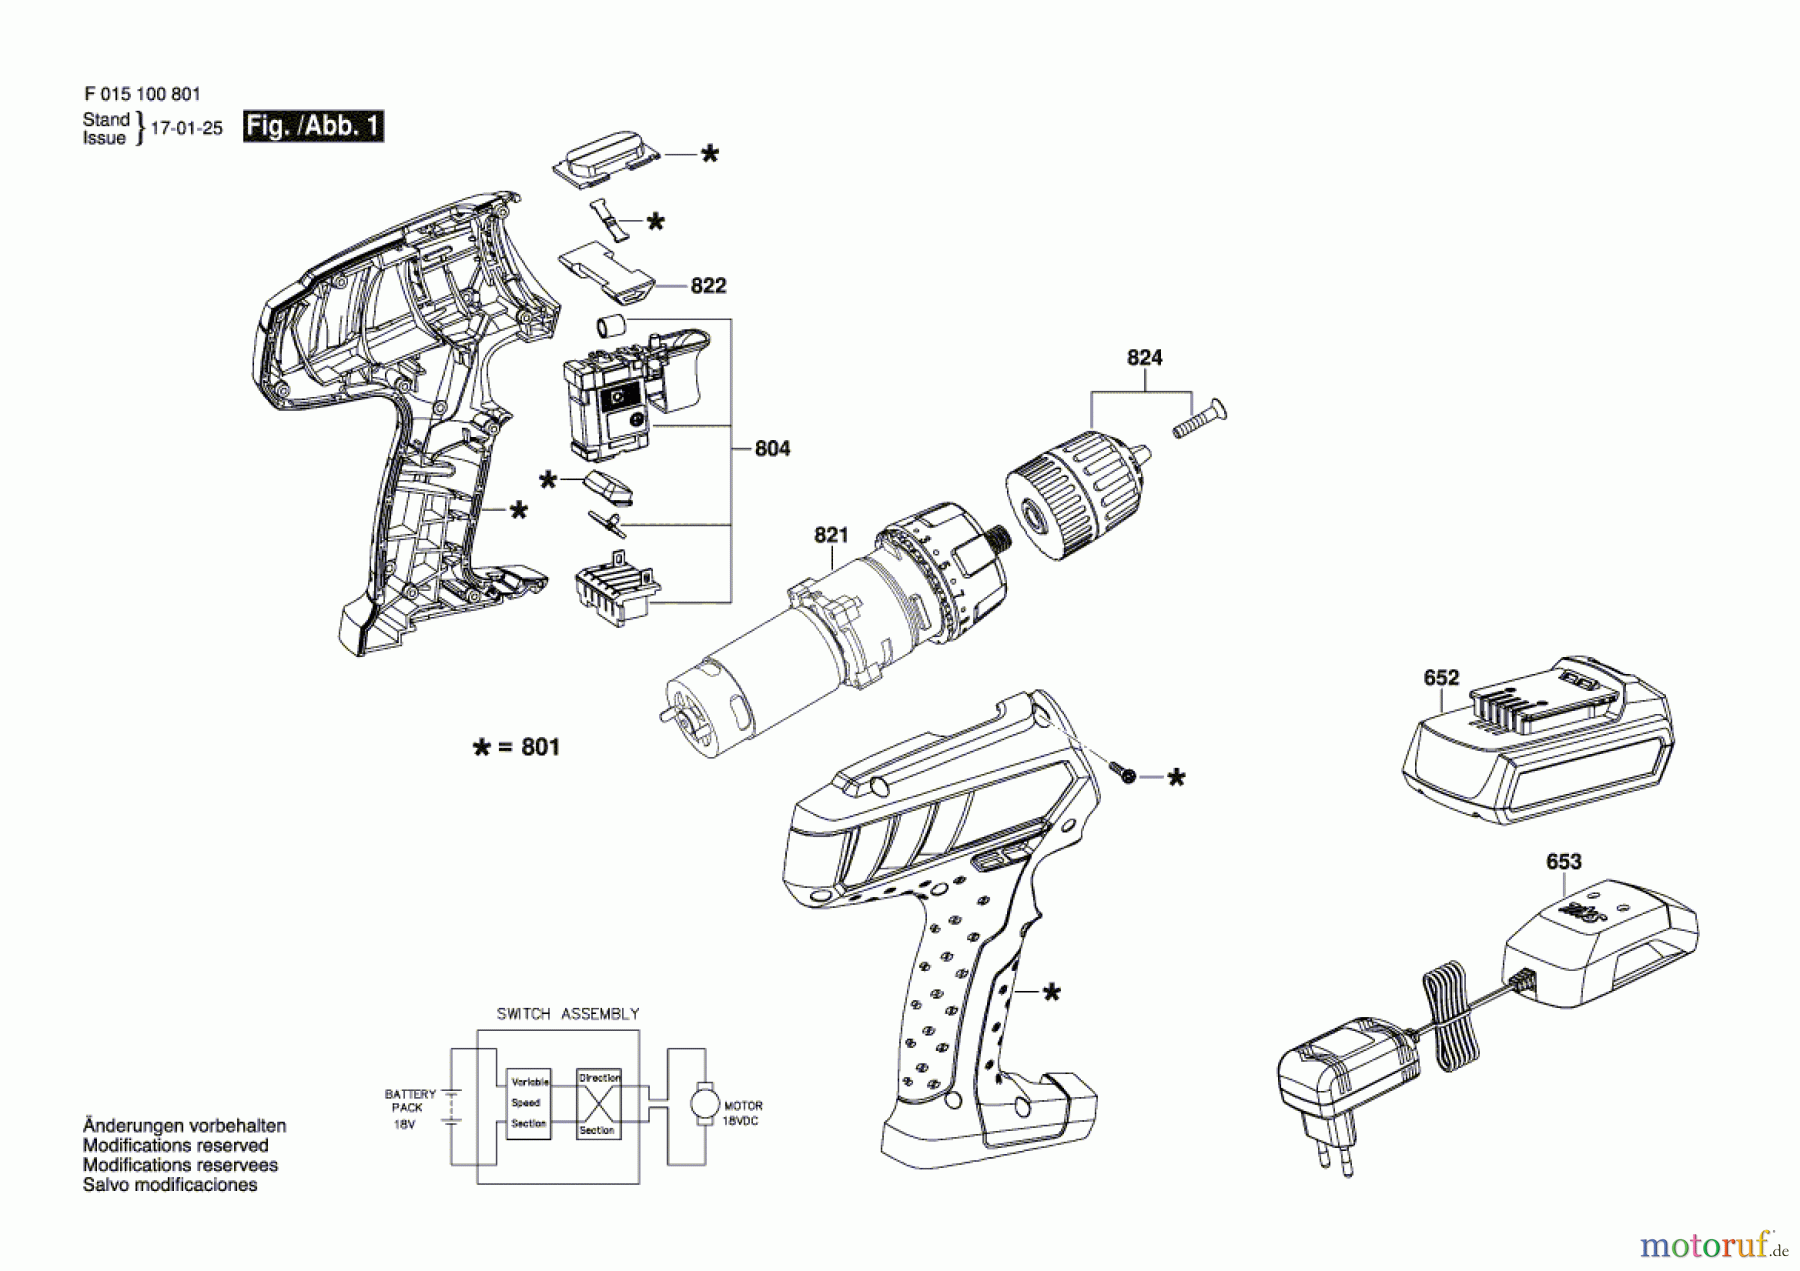  Bosch Akku Werkzeug Akku-Bohrschrauber 1008 Seite 1